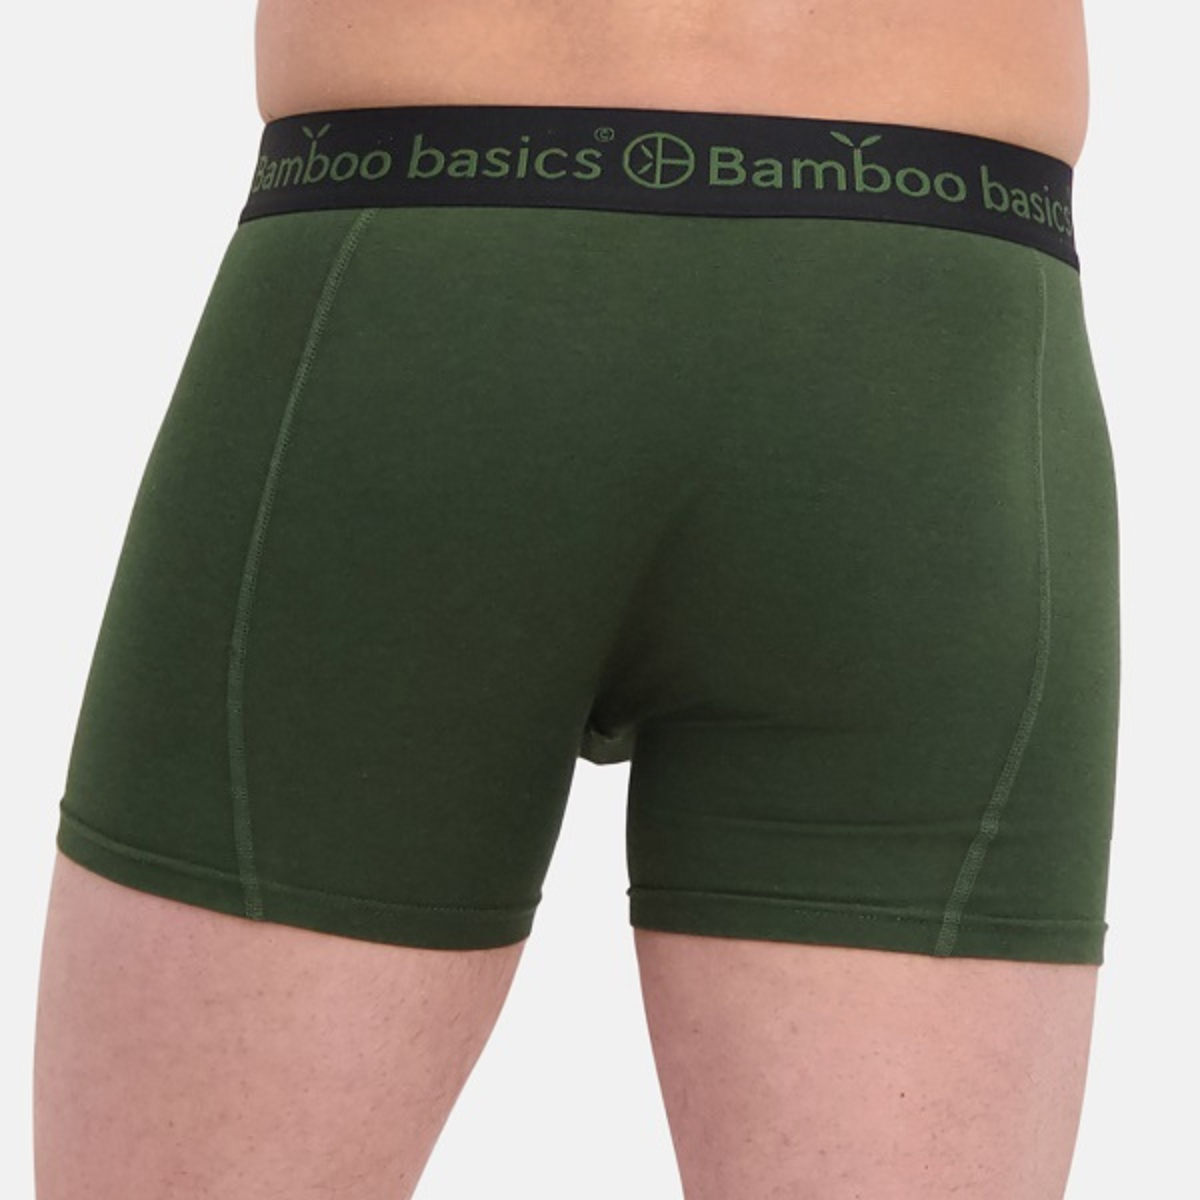 Bamboo Basics - Boxershorts Rico (3-Pack) Army green - Nahmoo